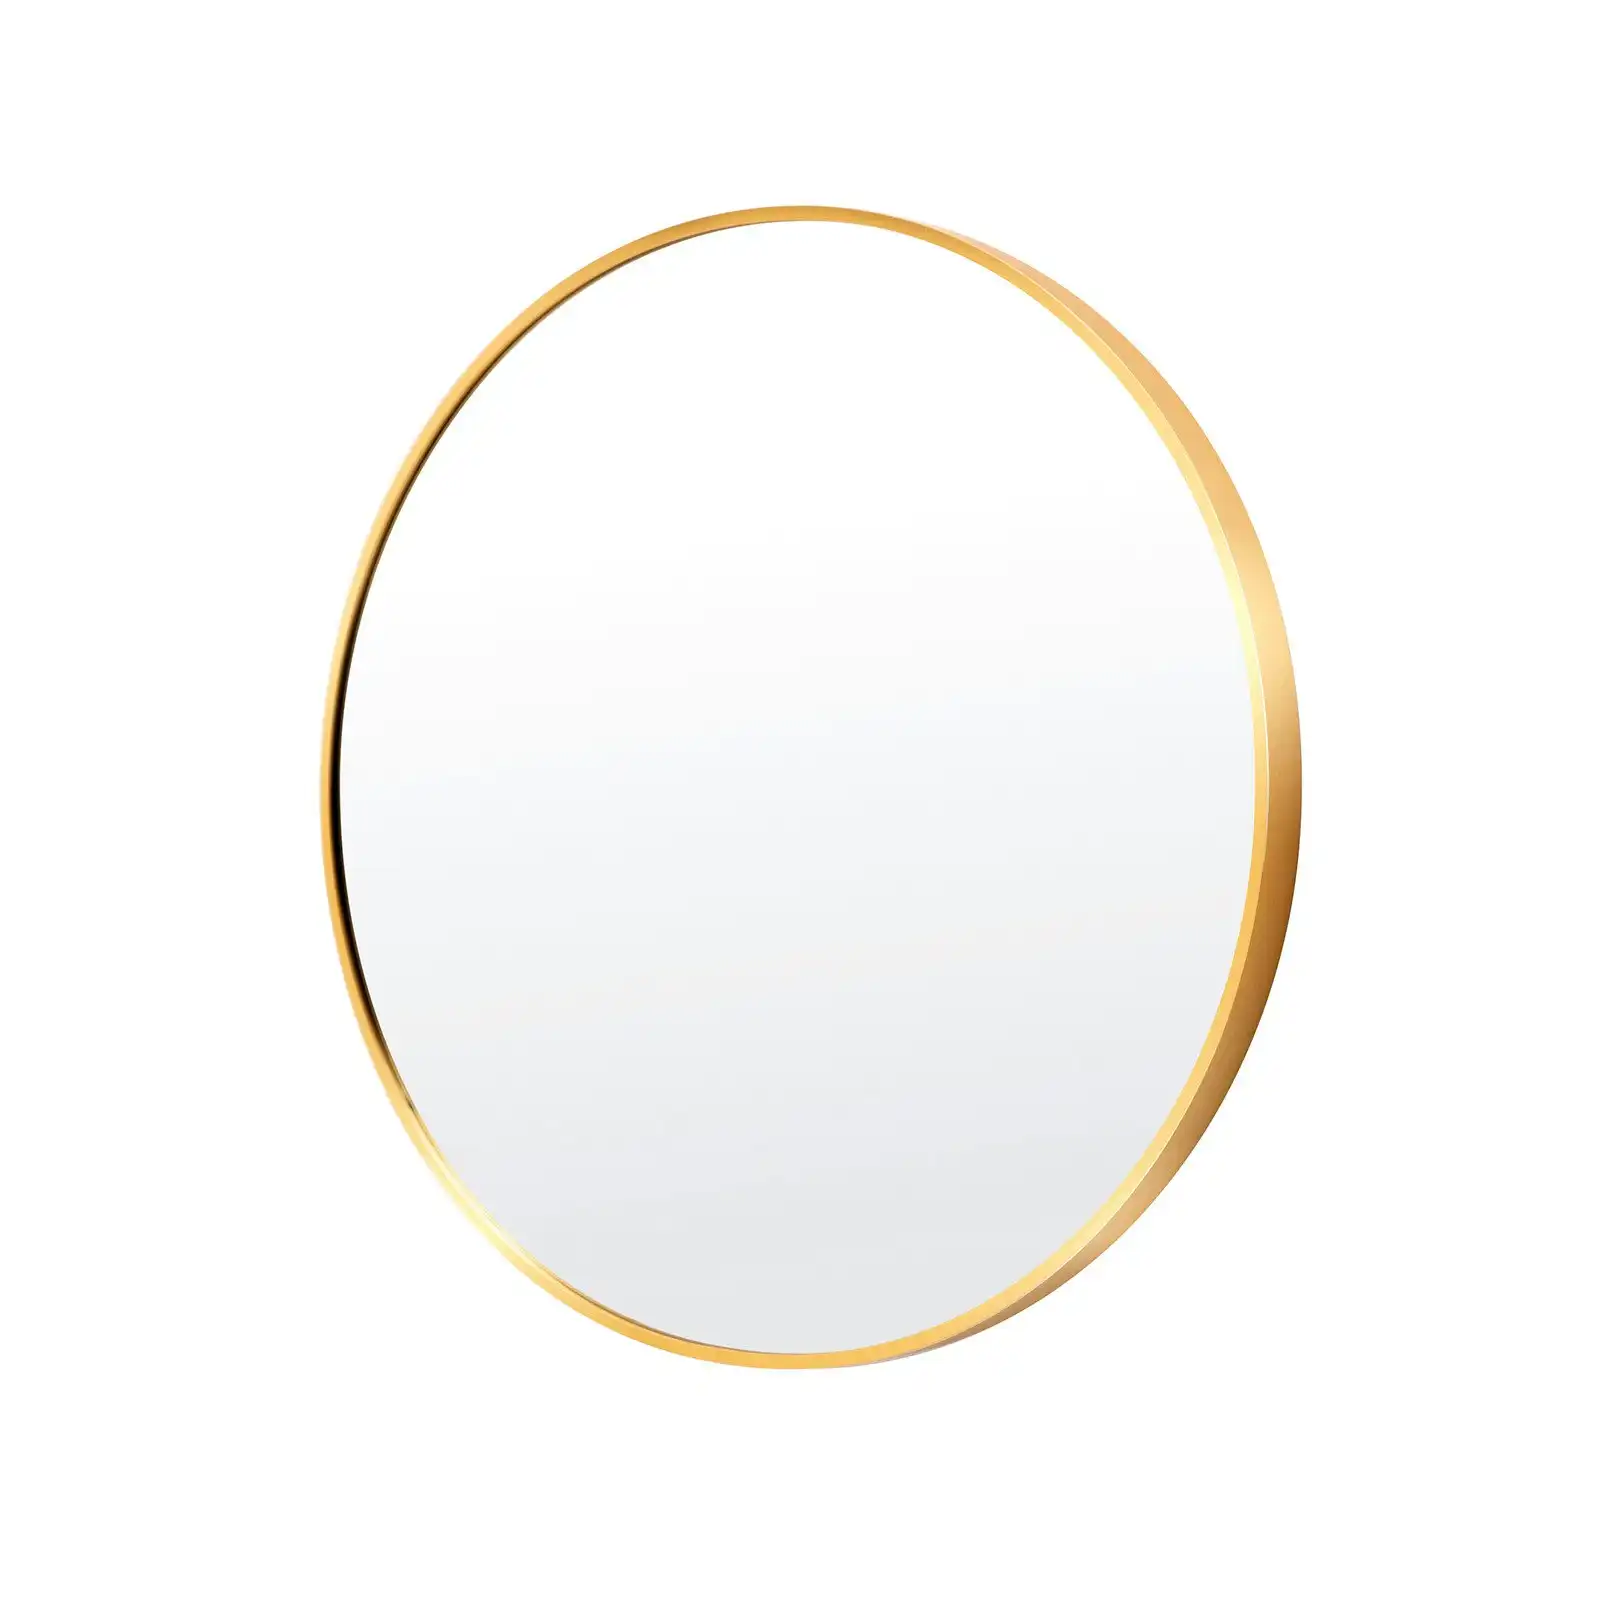 70cm Wall Mirror Round Bathroom - GOLD